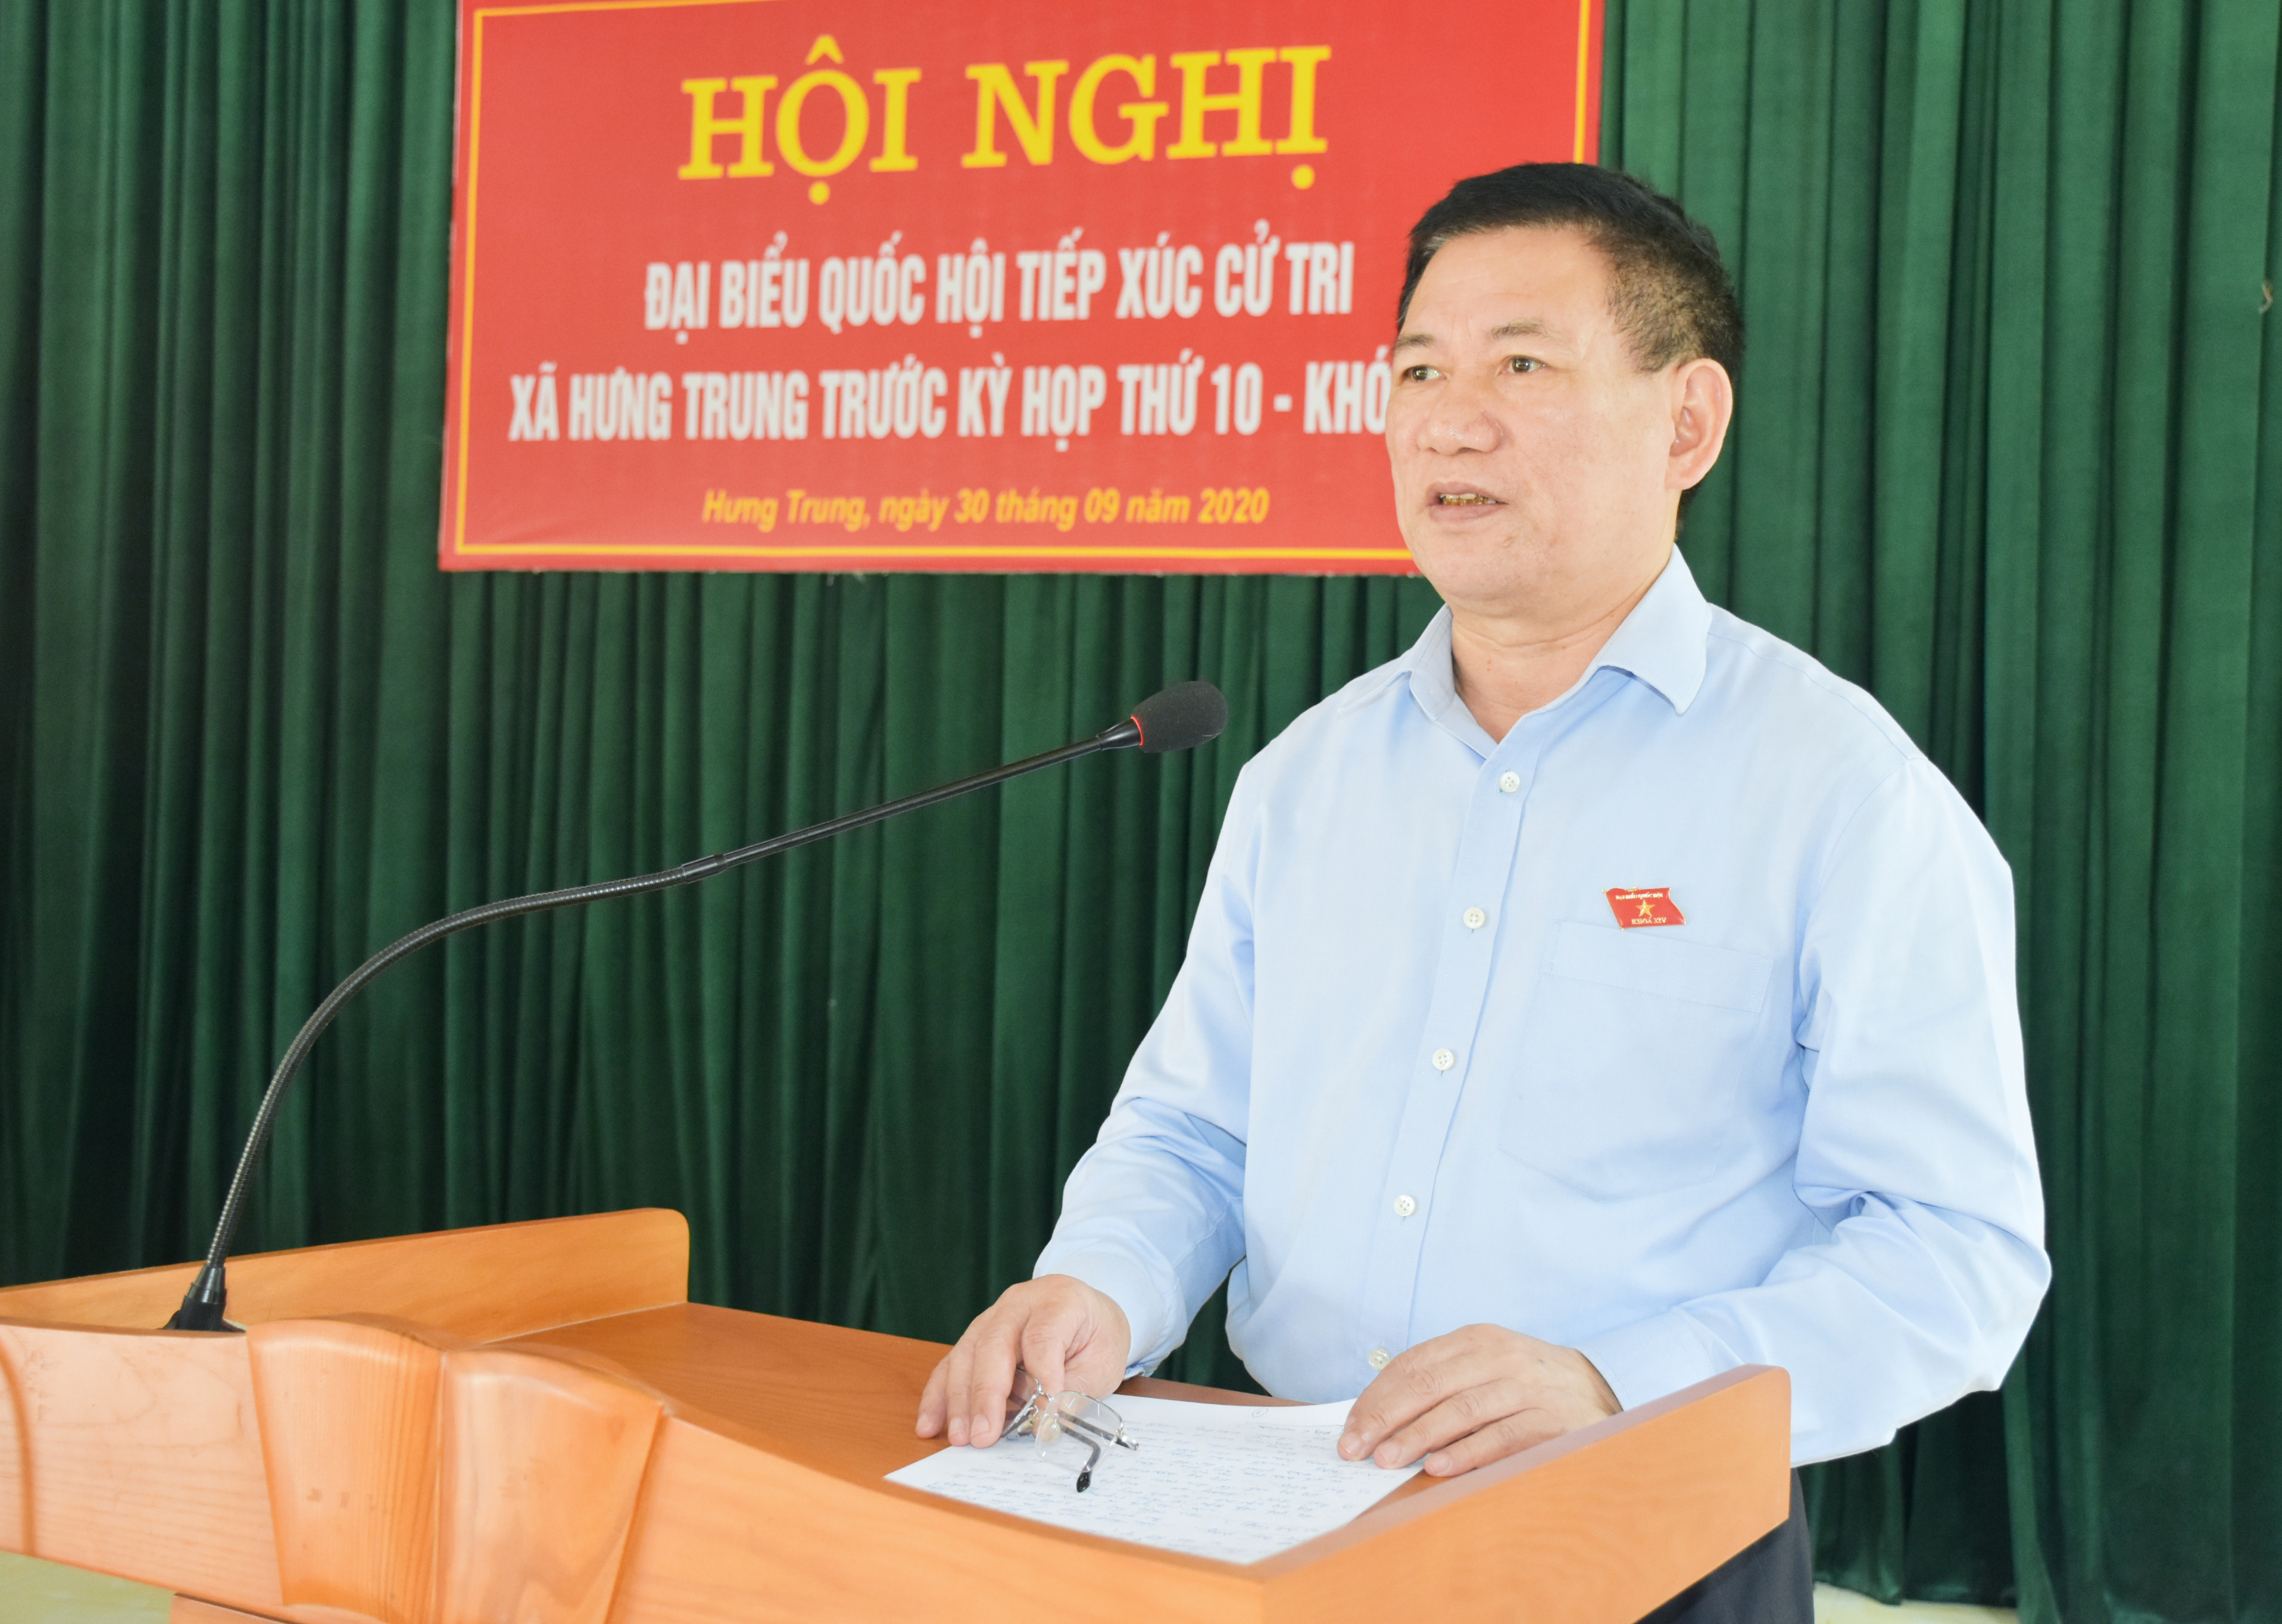 Tổng Kiểm toán Nhà nước Hồ Đức Phớc trả lời các kiến nghị của cử tri xã Hưng Trung  huyện Hưng Nguyên. Ảnh: Thanh Lê